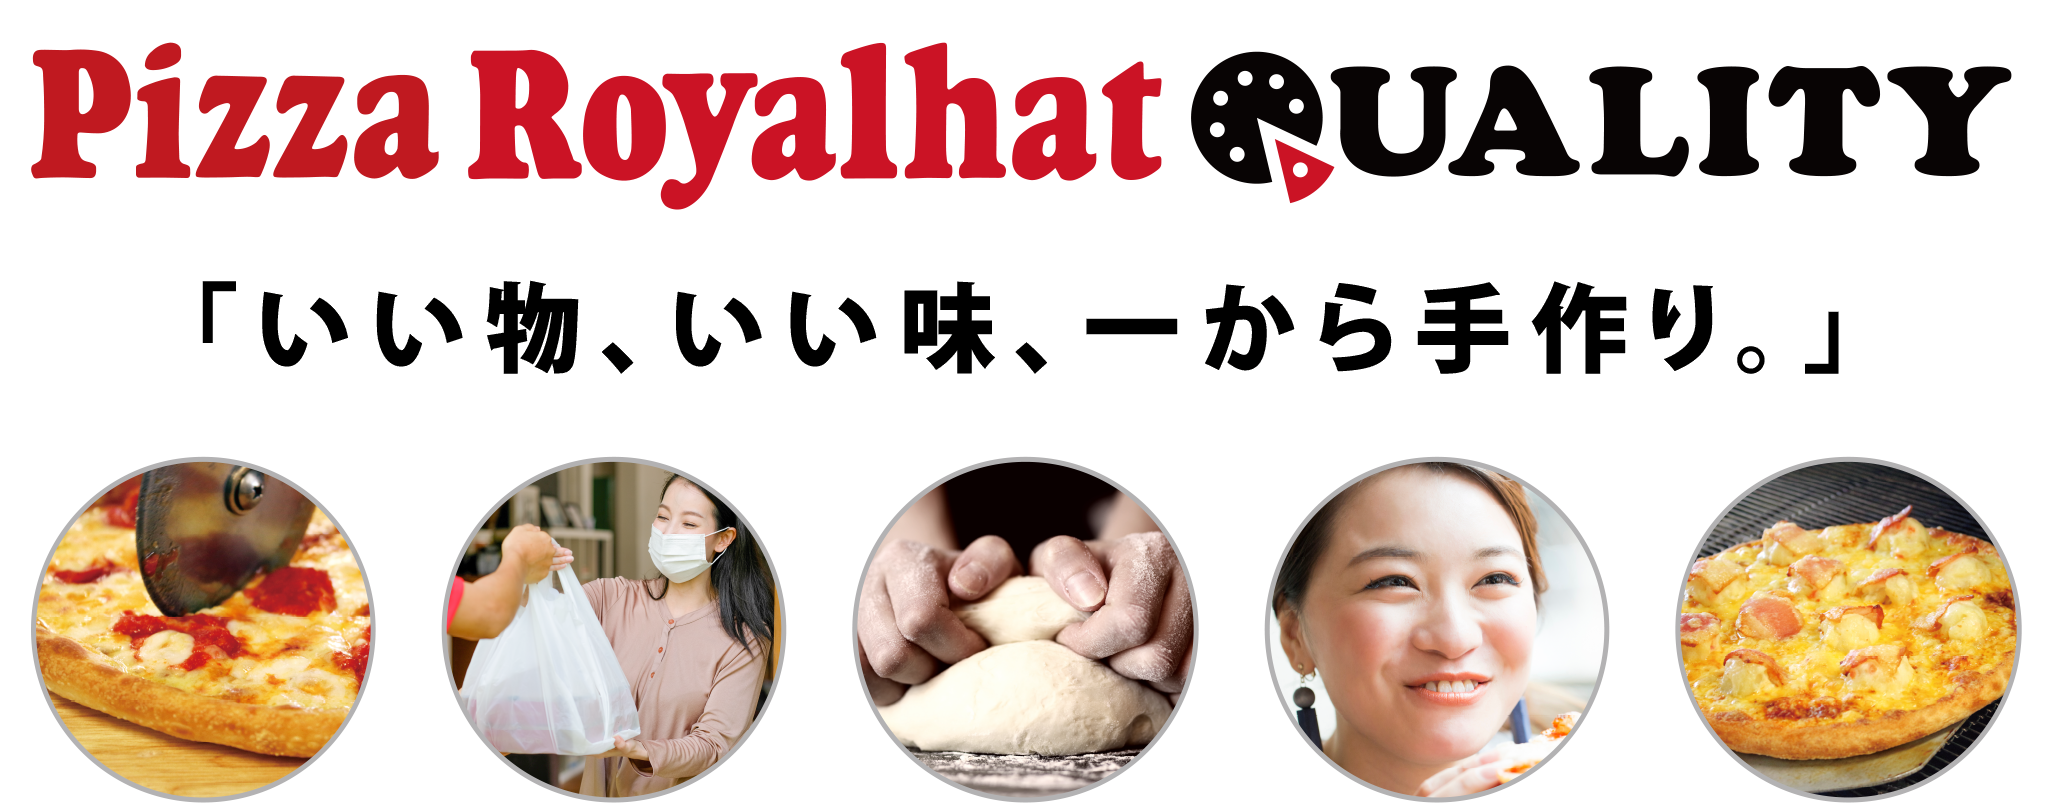 Royalhat UALITY 「いい物、いい味、一から手作り。」